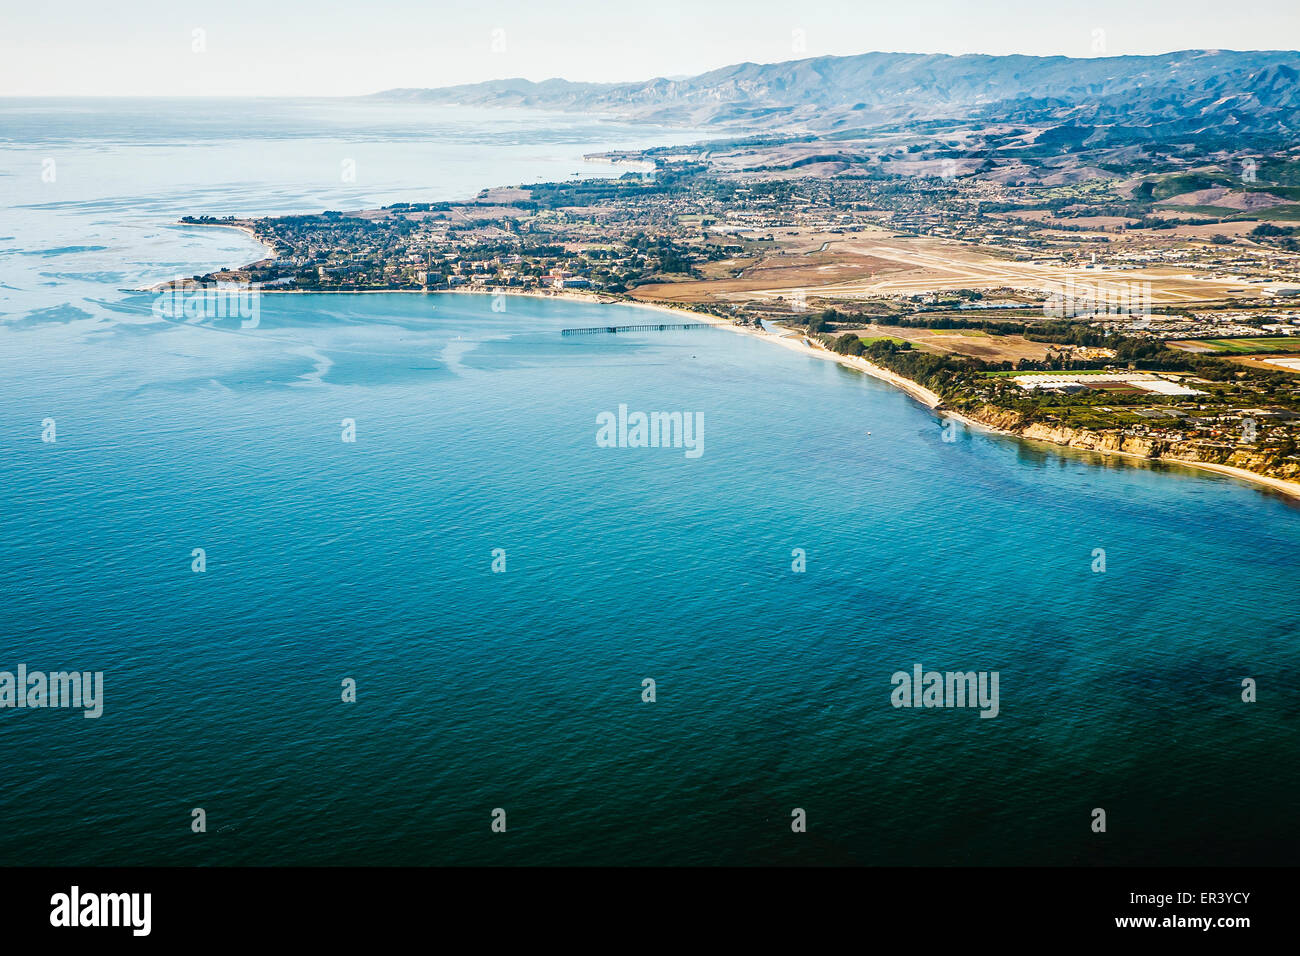 Eine Luftaufnahme des Campus der University of California Santa Barbara und Teile von Goleta und Isla Vista, Kalifornien. Stockfoto